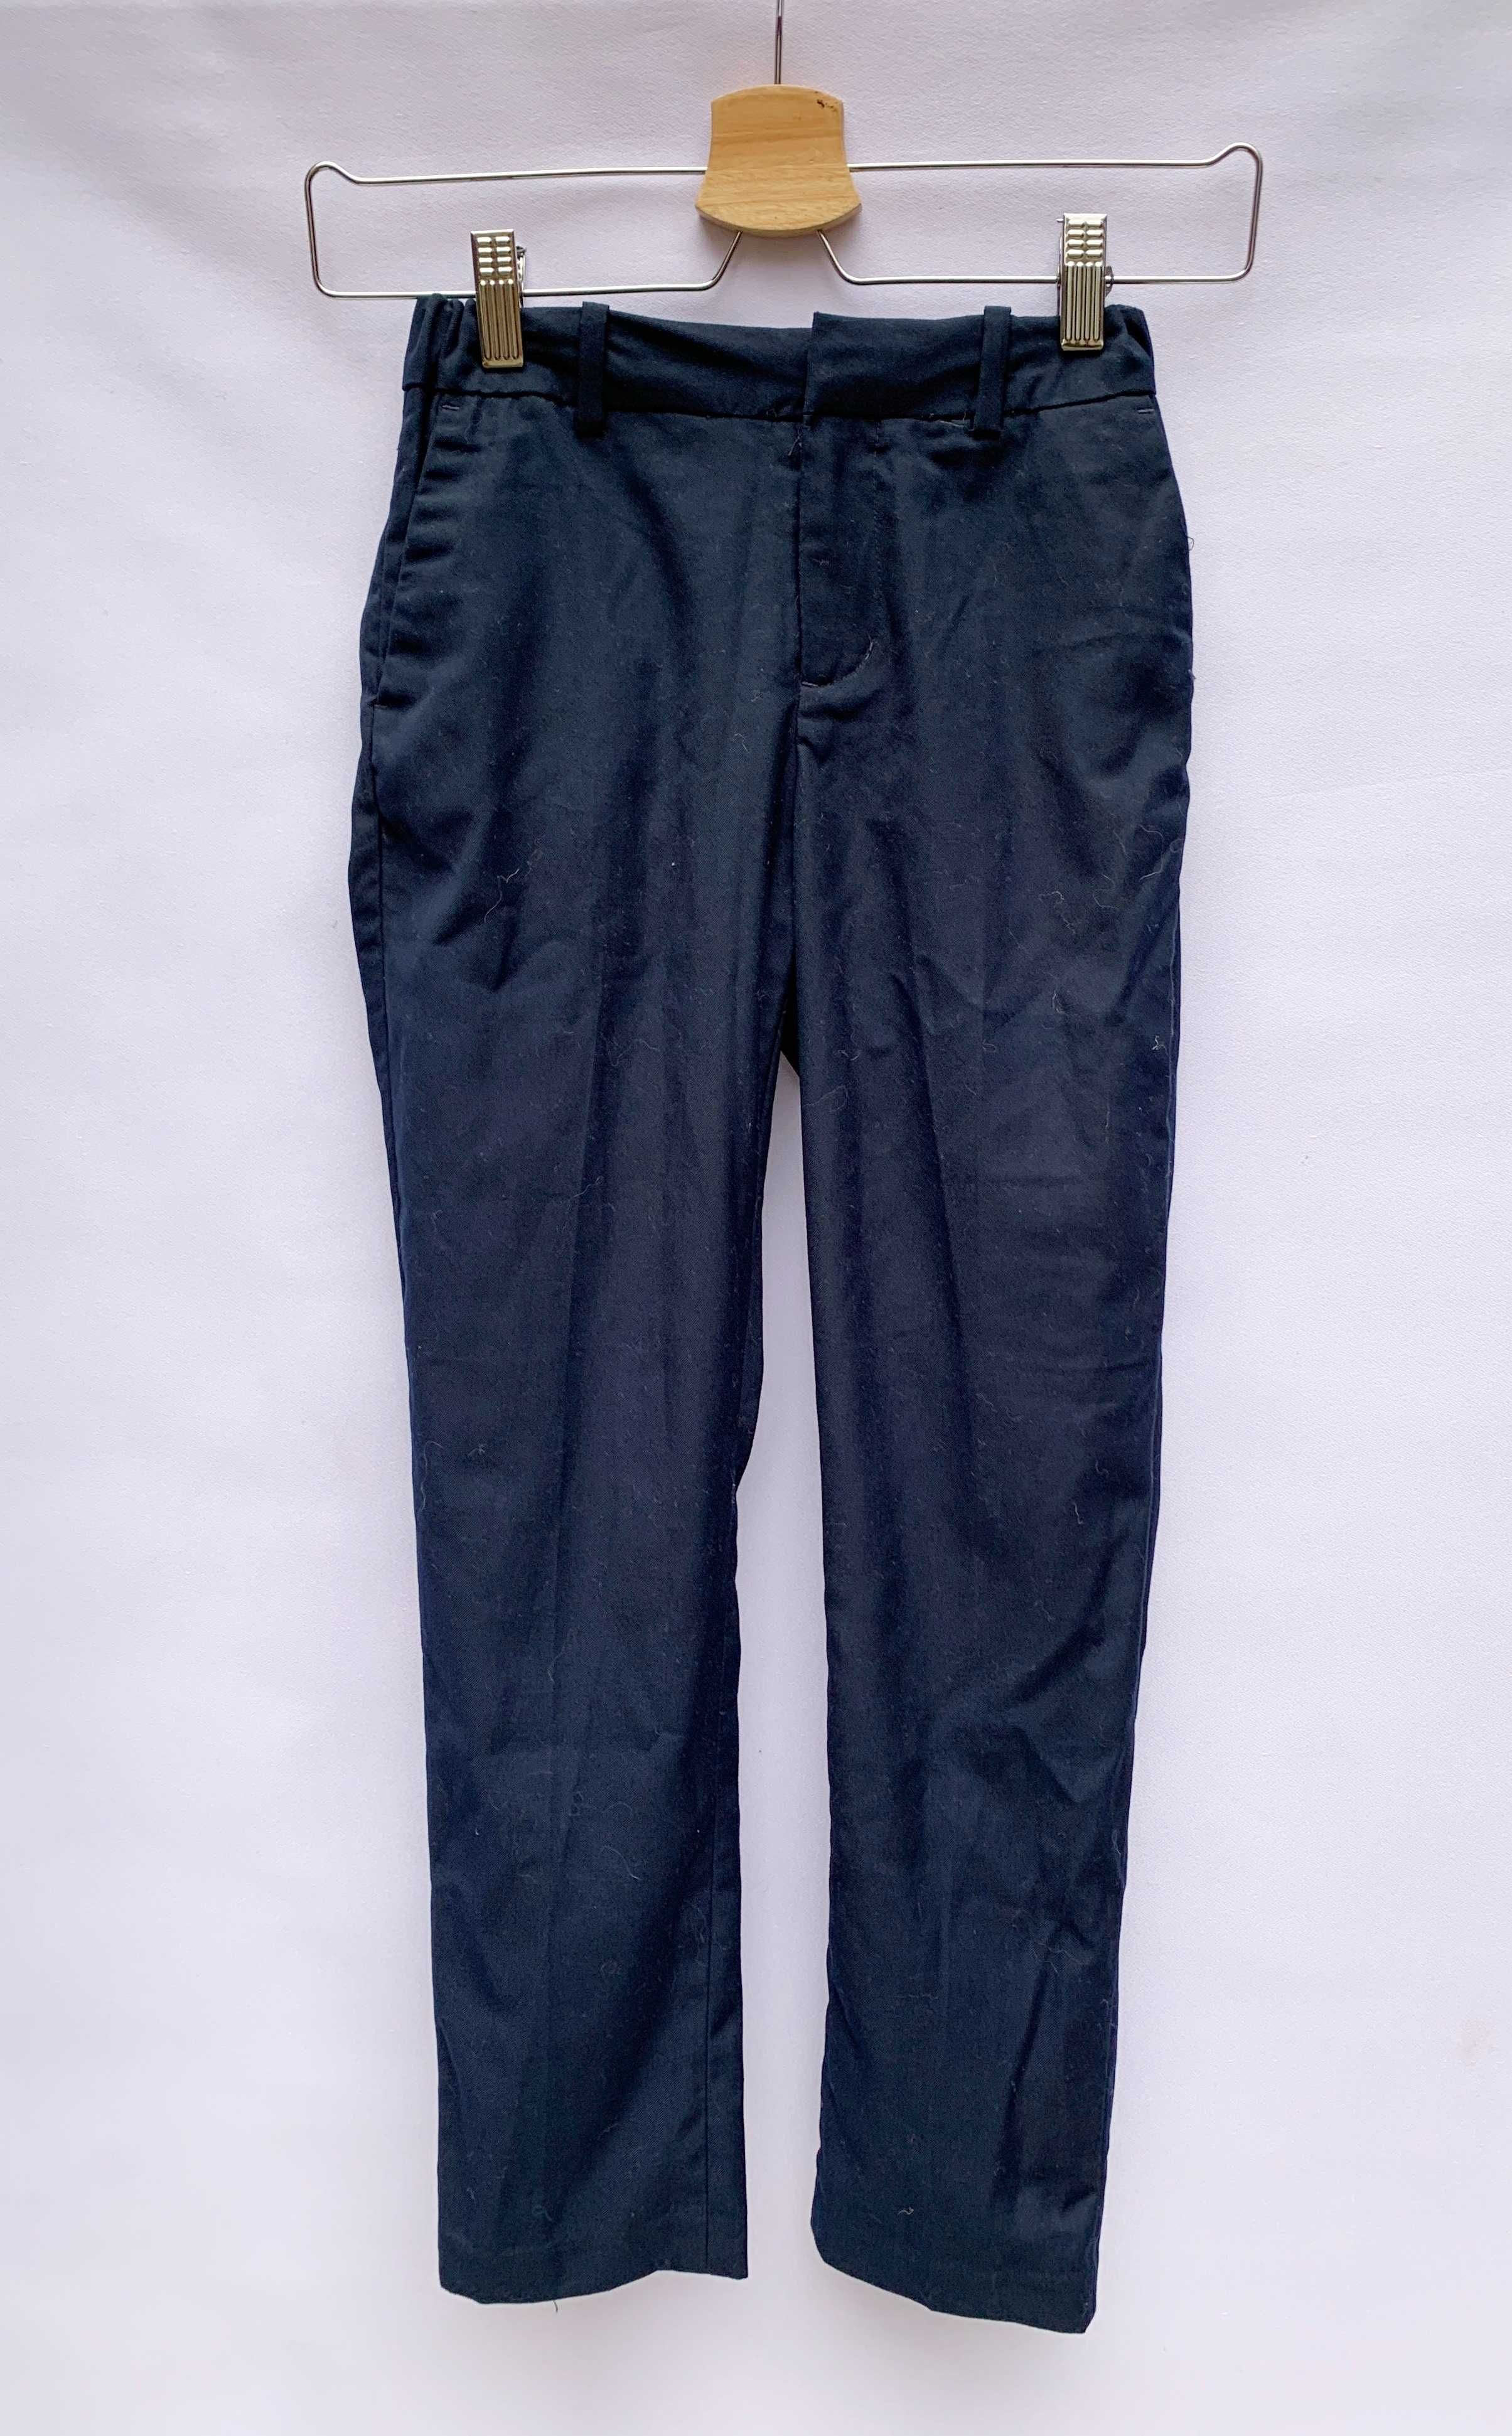 Spodnie H&M Eleganckie Granatowe 146 cm 12 lat Wizytowe